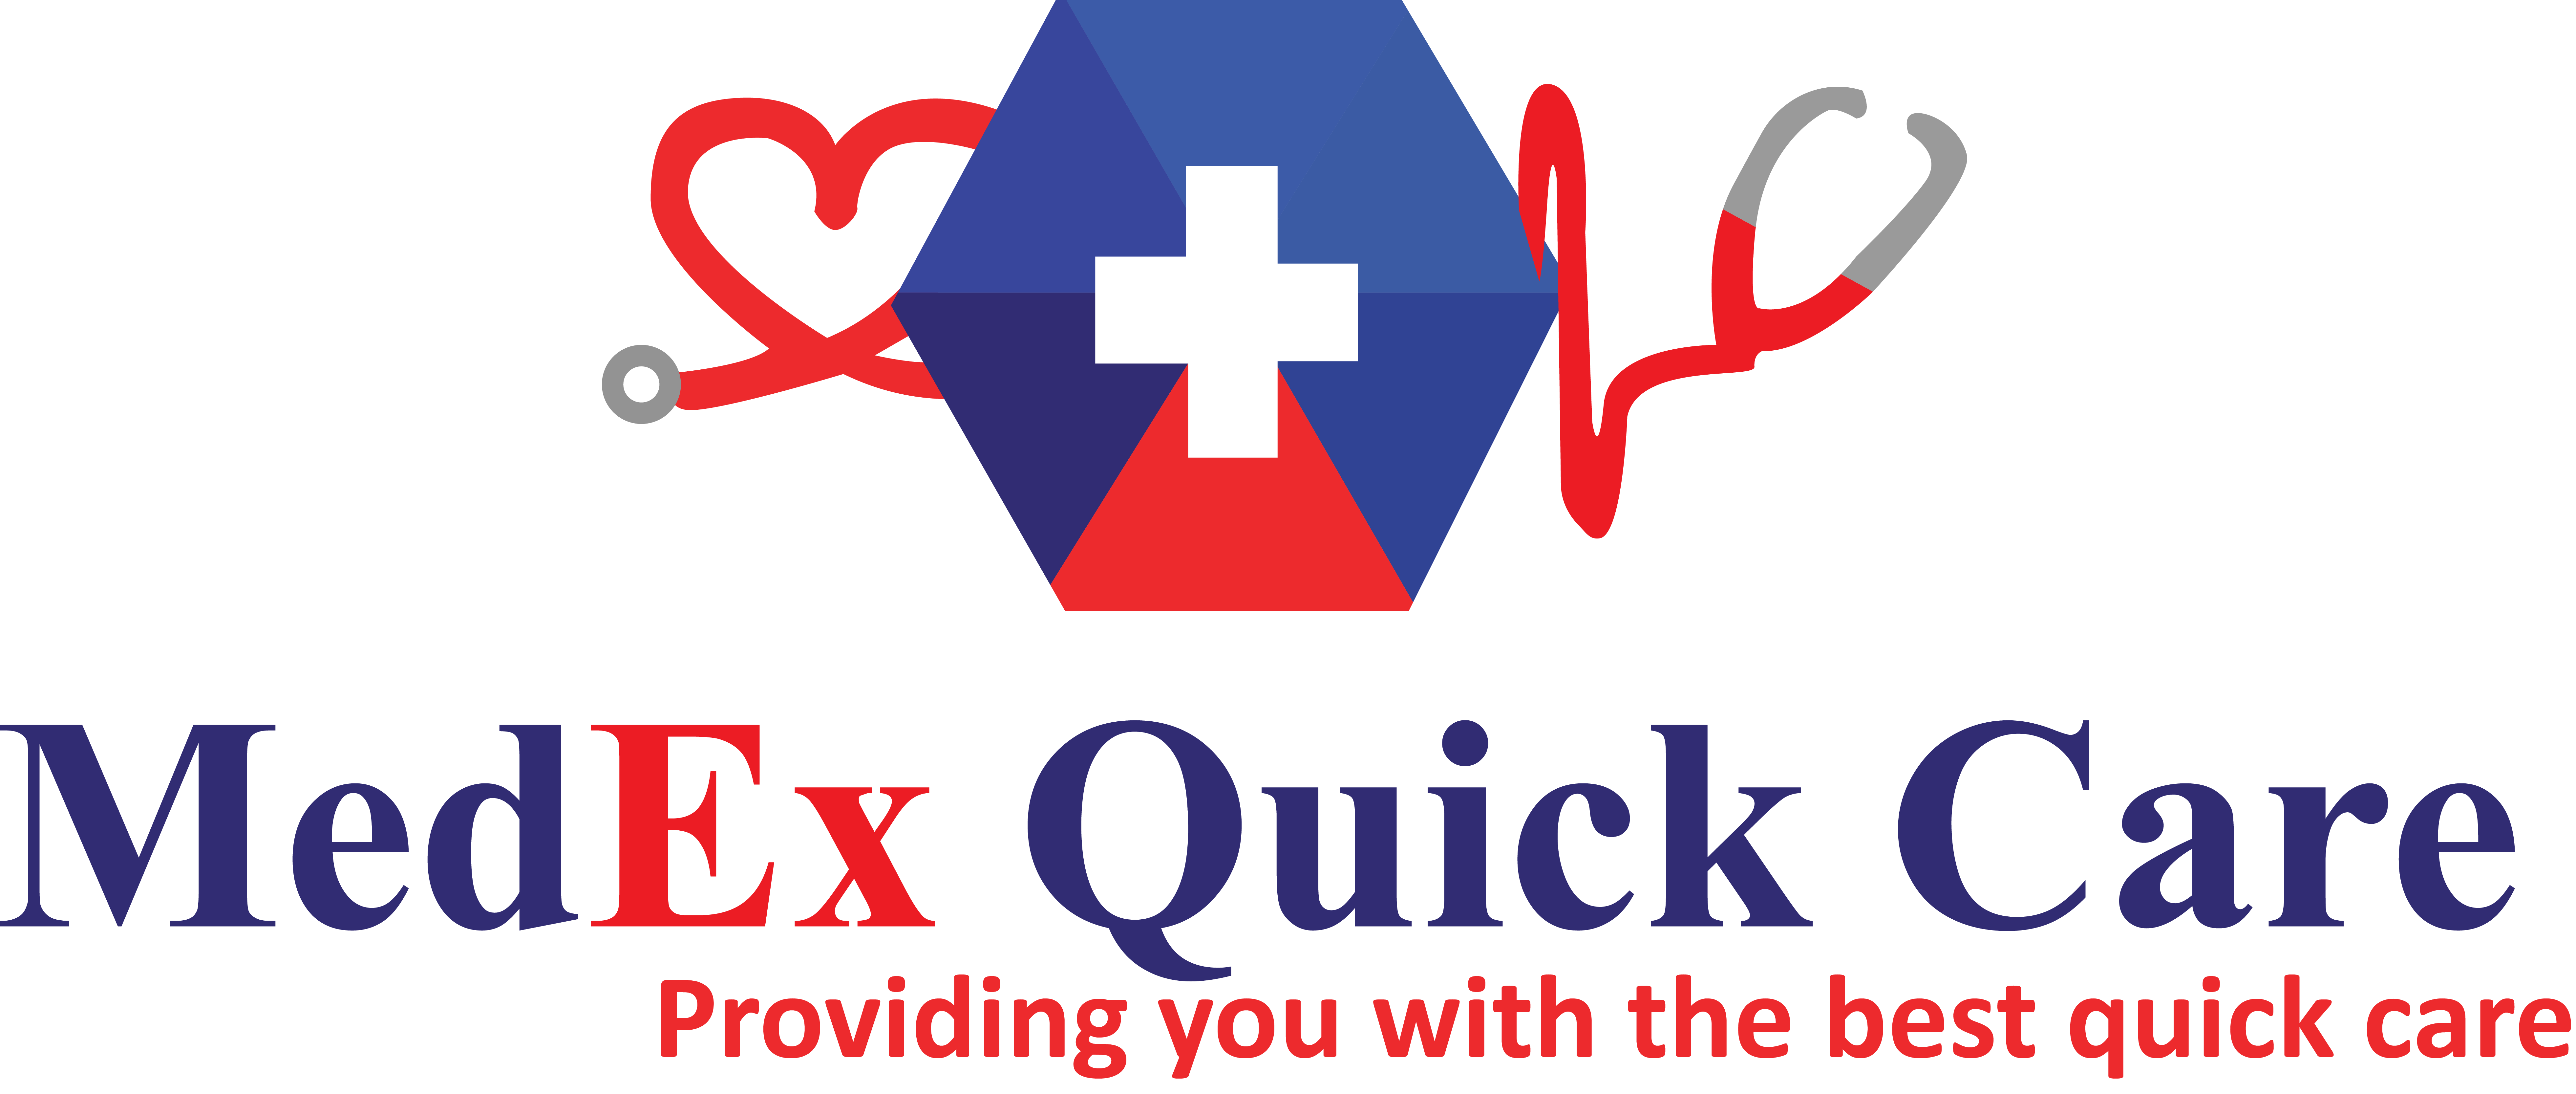 MedEX Quick Care Logo